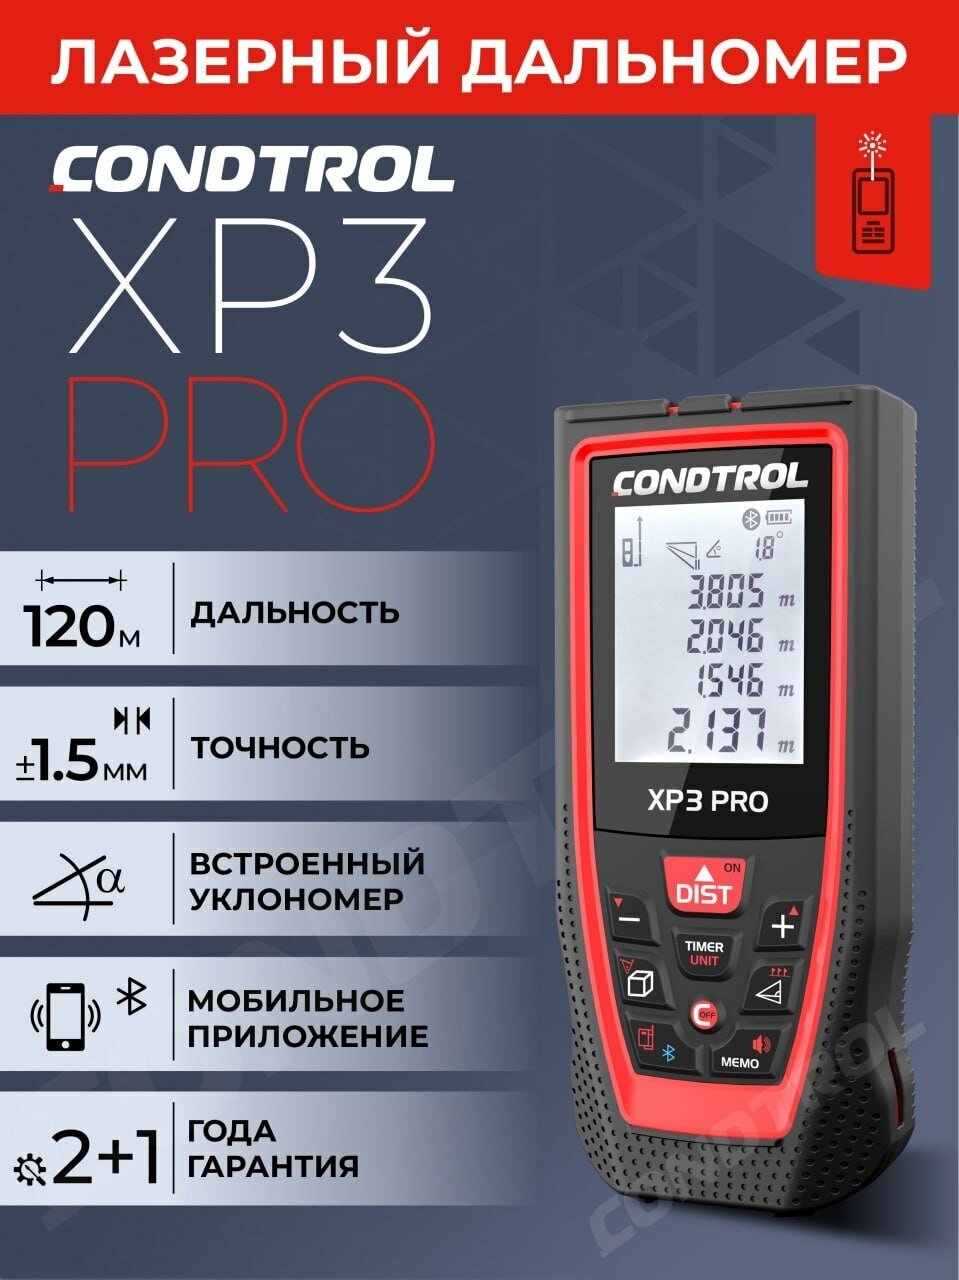 Лазерный дальномер CONDTROL XP3 Pro